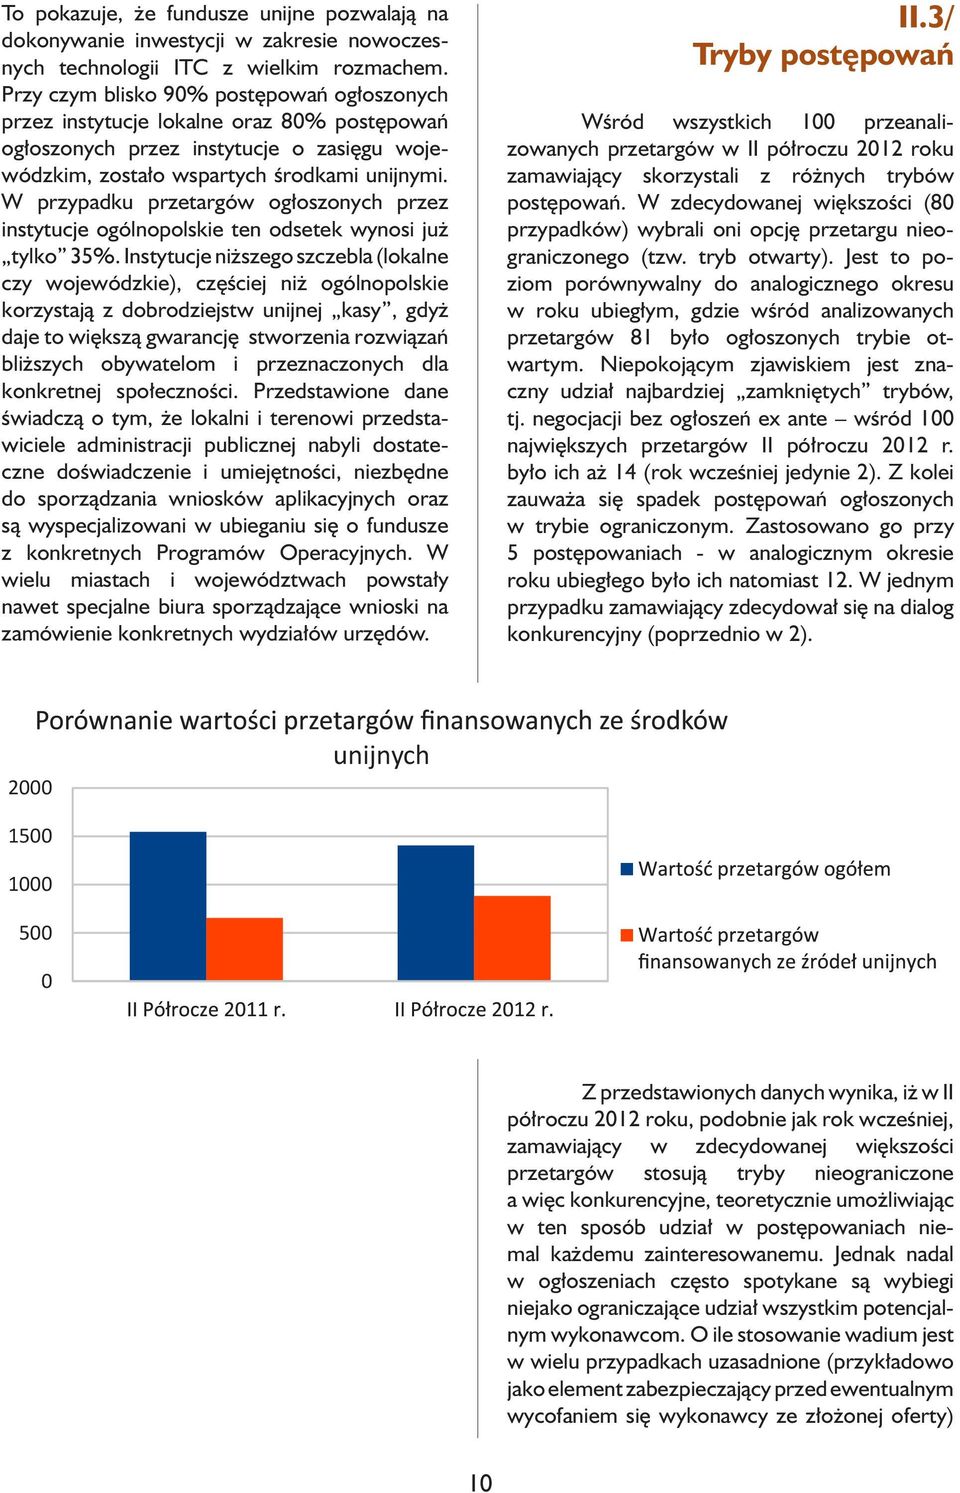 W przypadku przetargów ogłoszonych przez instytucje ogólnopolskie ten odsetek wynosi już tylko 35%.